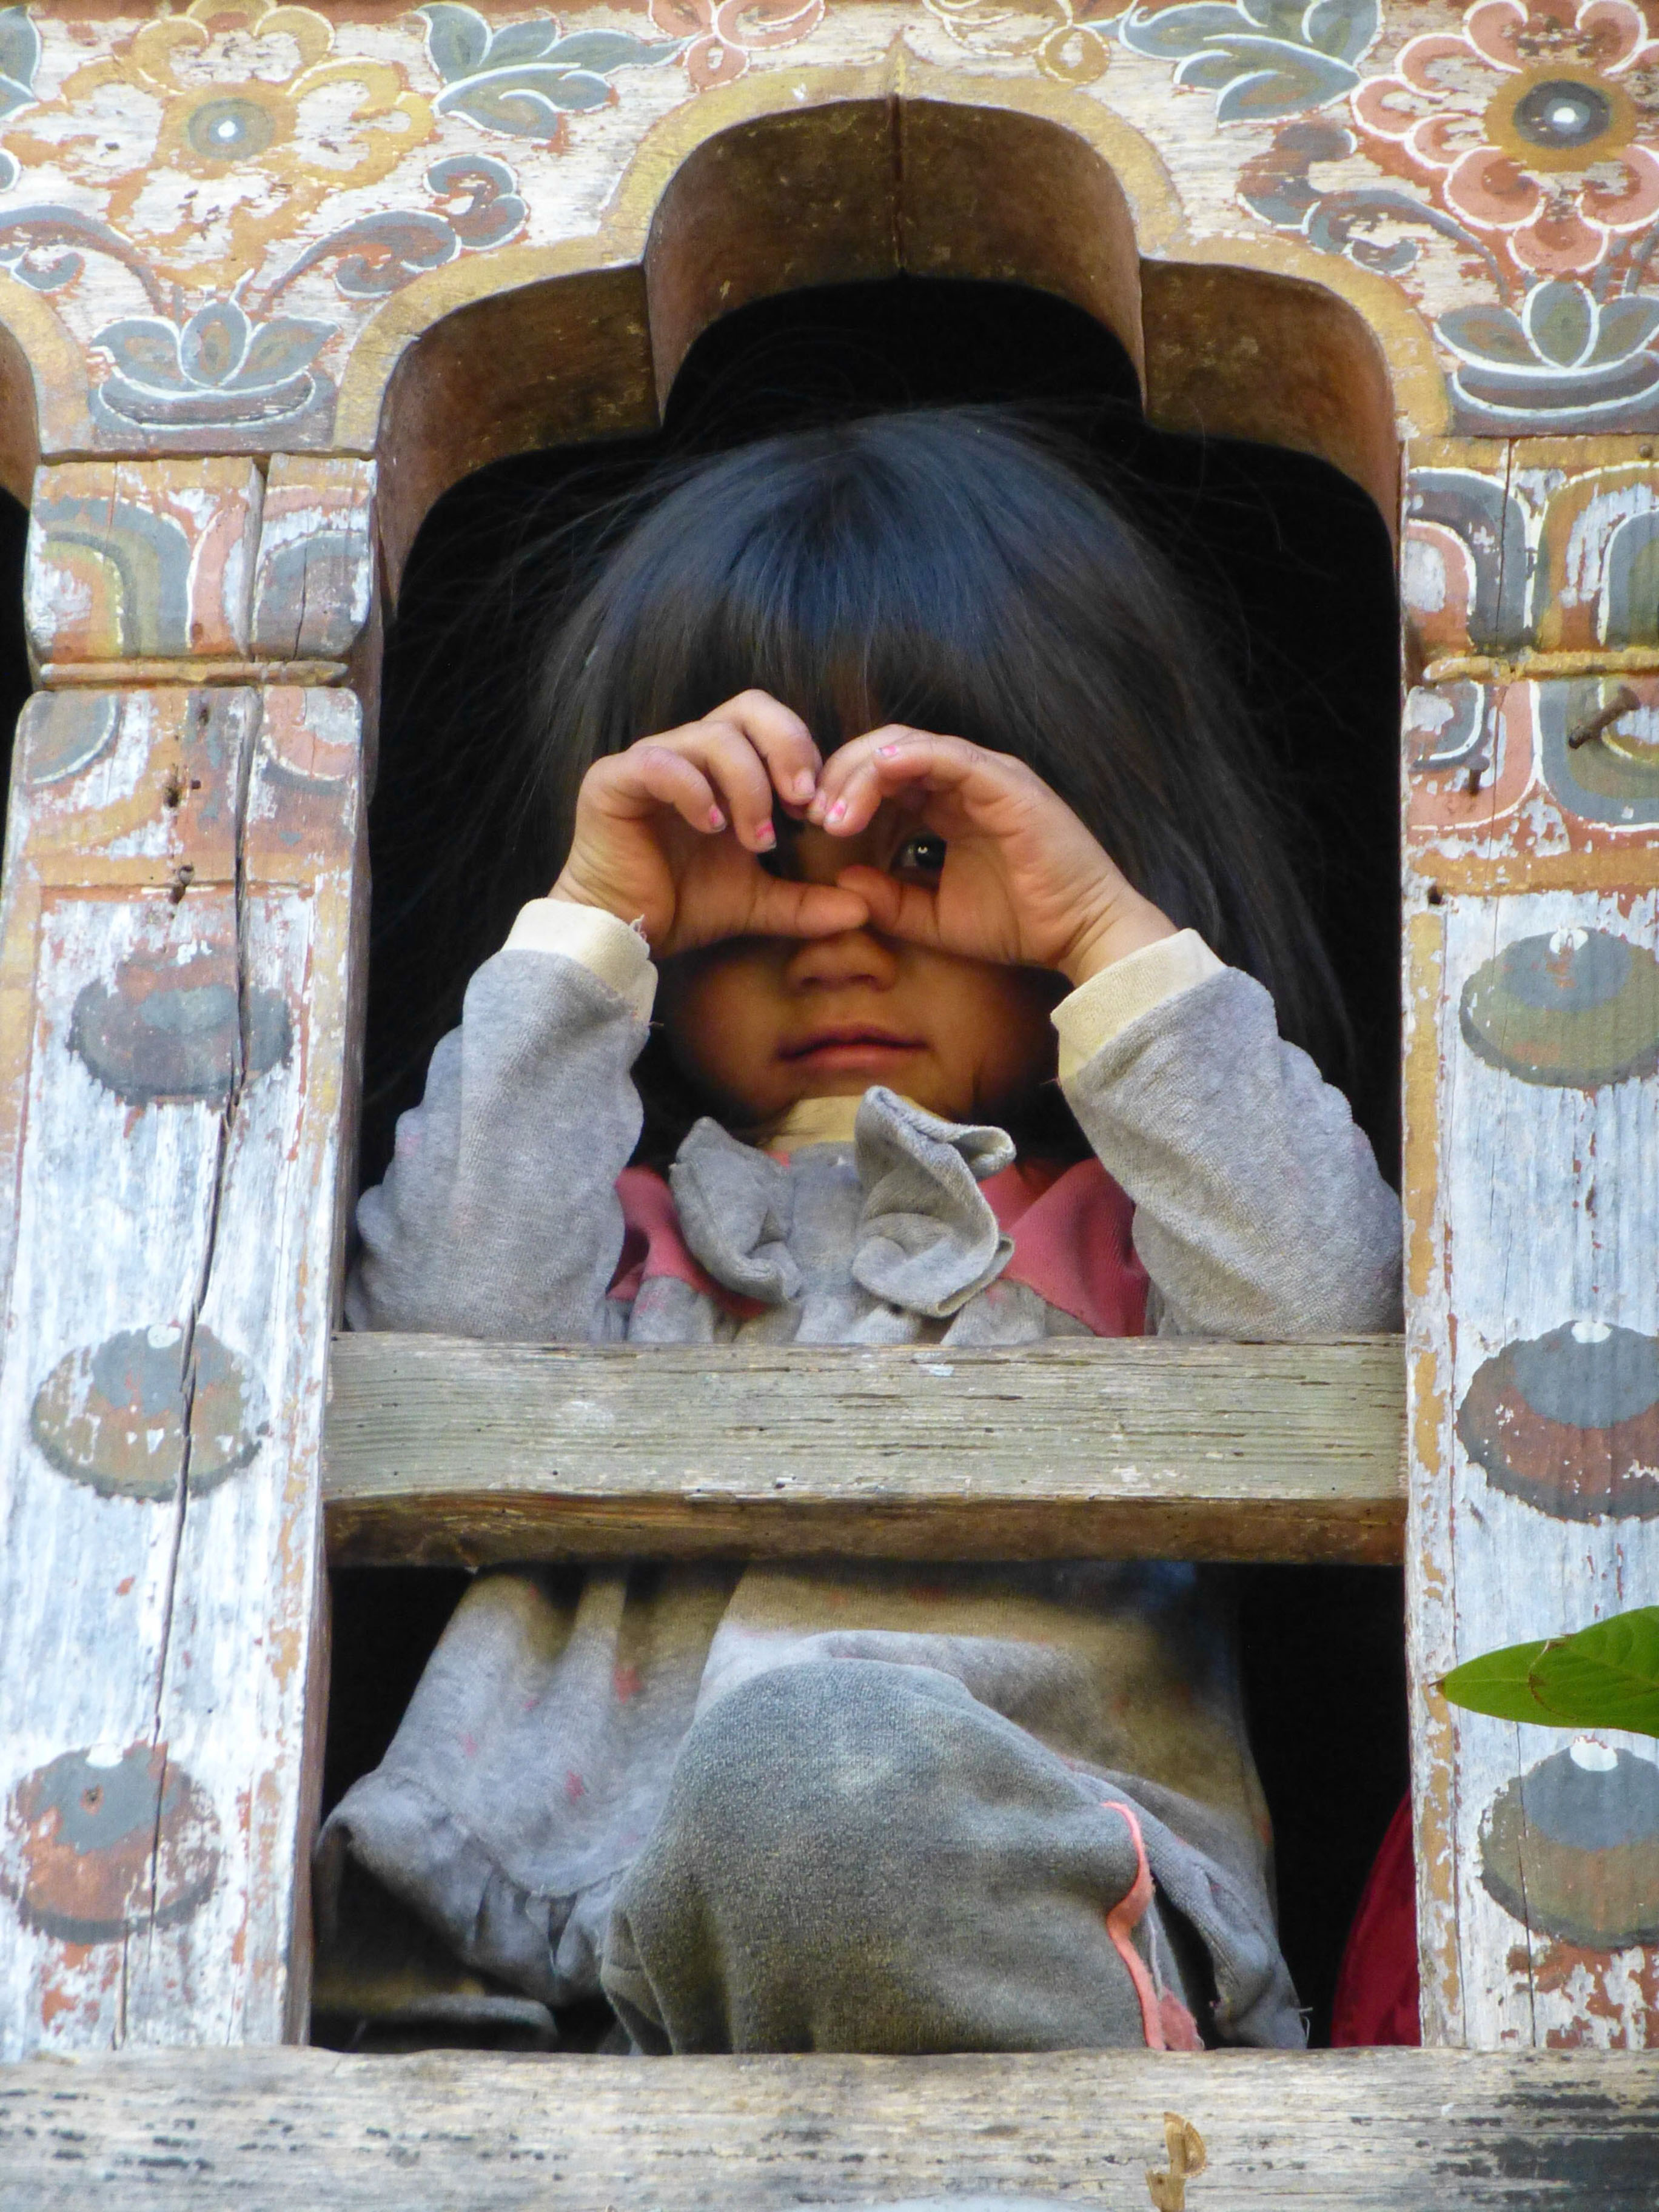 Les enfants, à la fois curieux et timides, observent ces drôles de danses depuis les étroites fenêtres des maisons traditionnelles - Triptyque himalayen